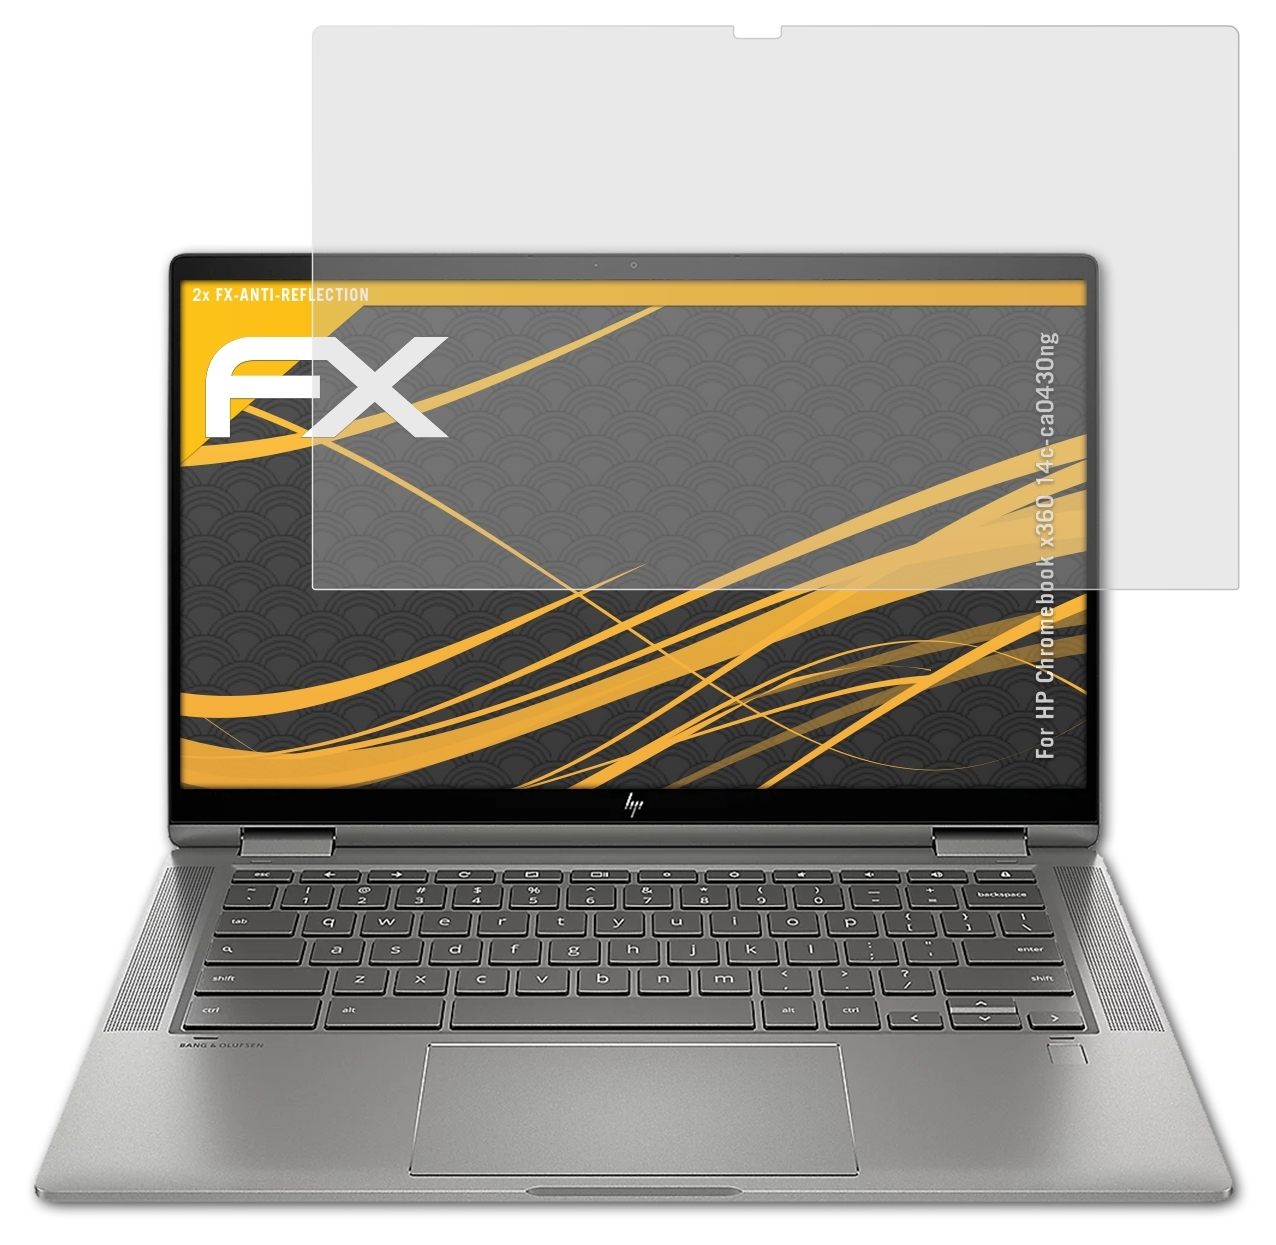 HP 2x Displayschutz(für FX-Antireflex (14c-ca0430ng)) x360 ATFOLIX Chromebook